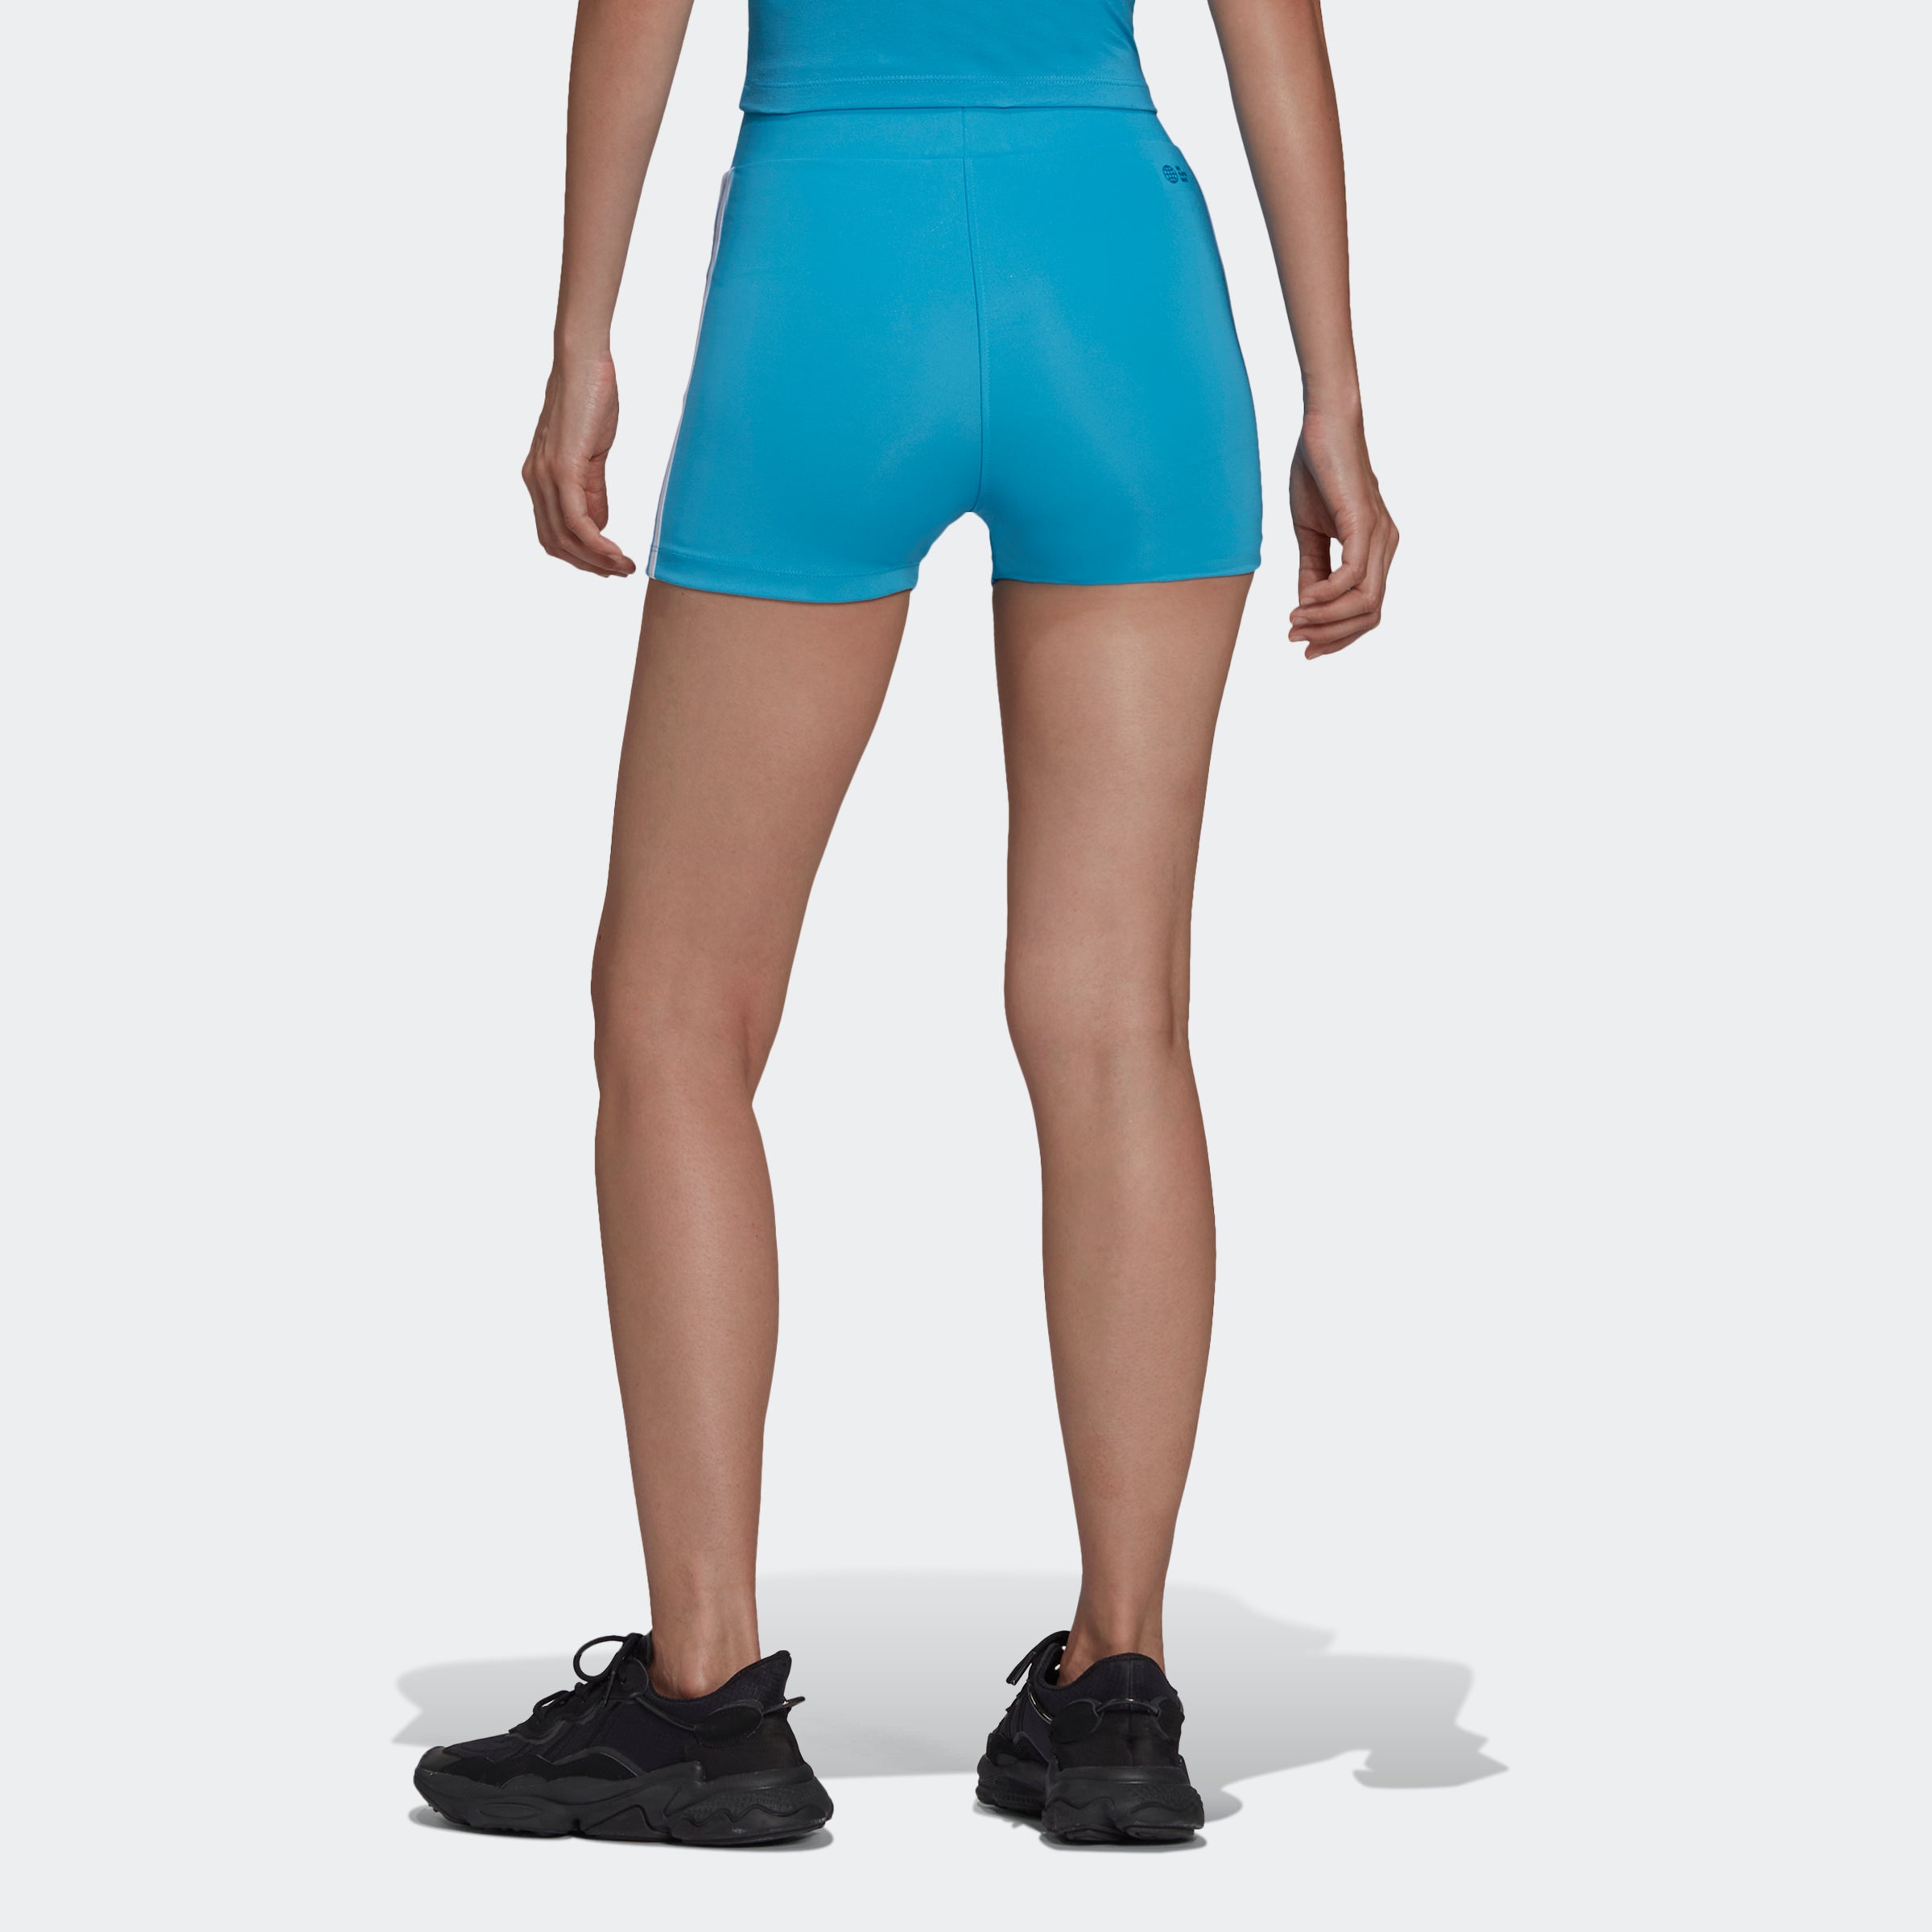 Quần Shorts adidas 3 sọc phản quang Nam - HE2468